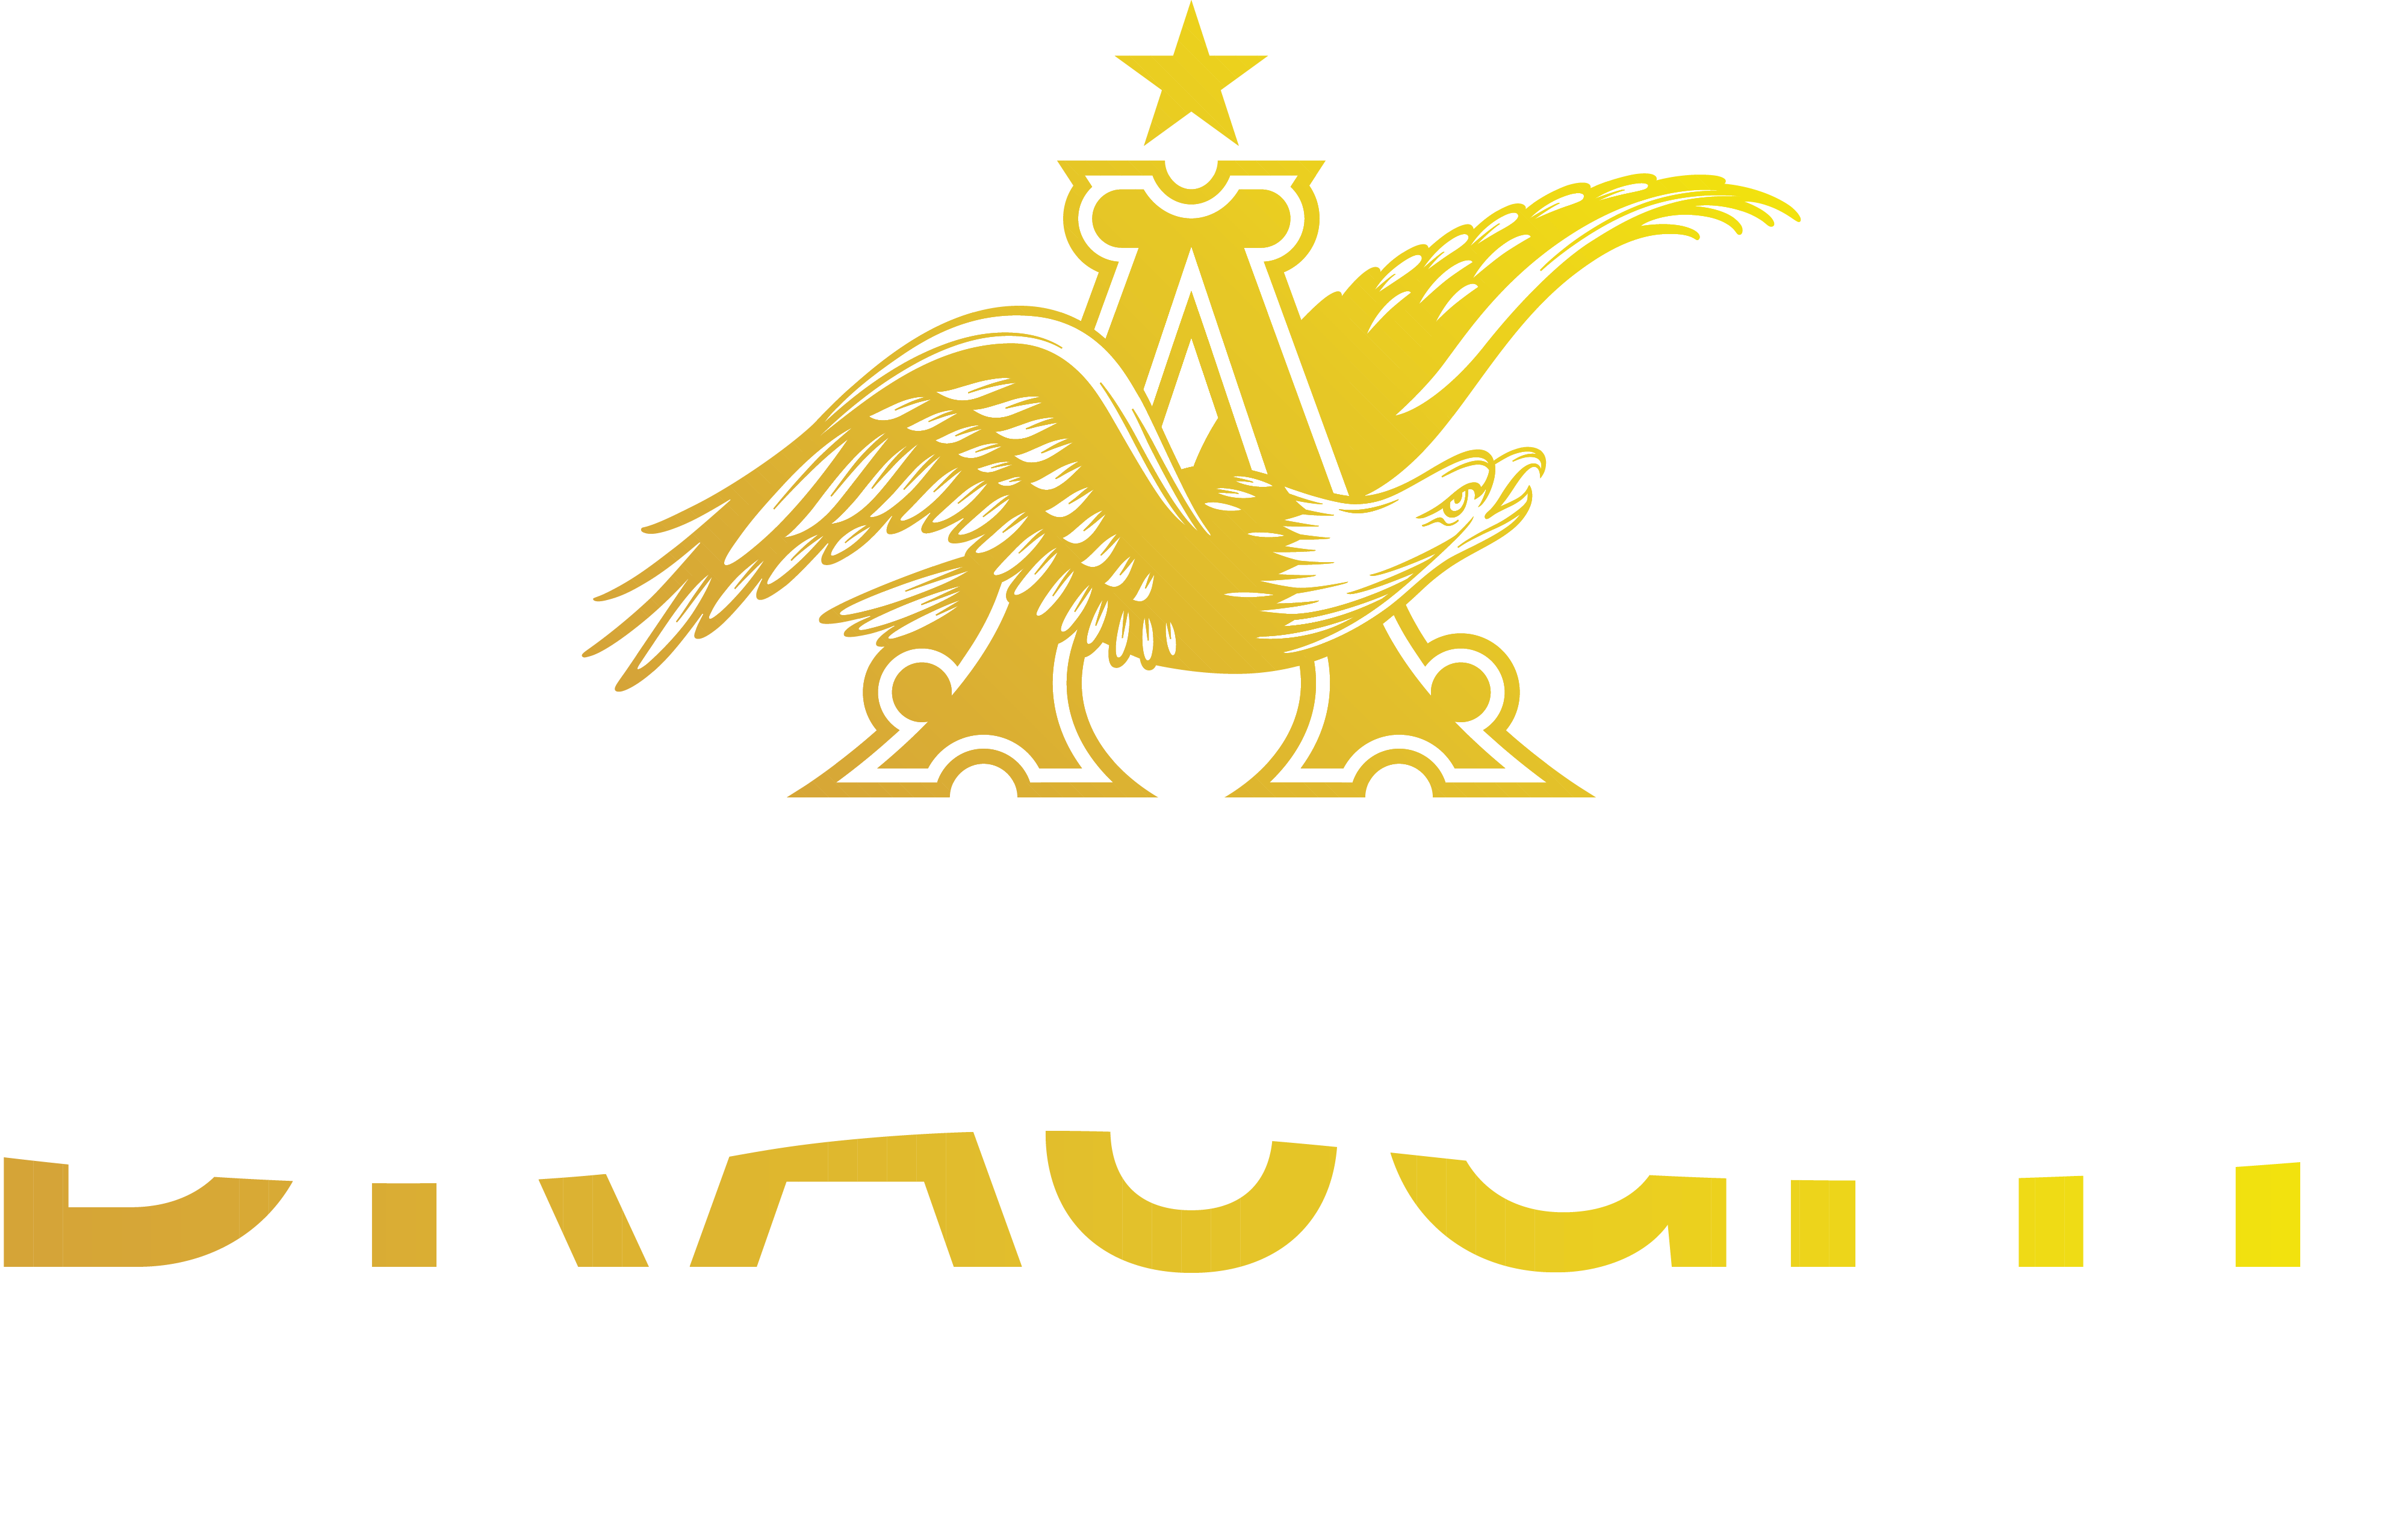 Anheuser Busch Draught Logo